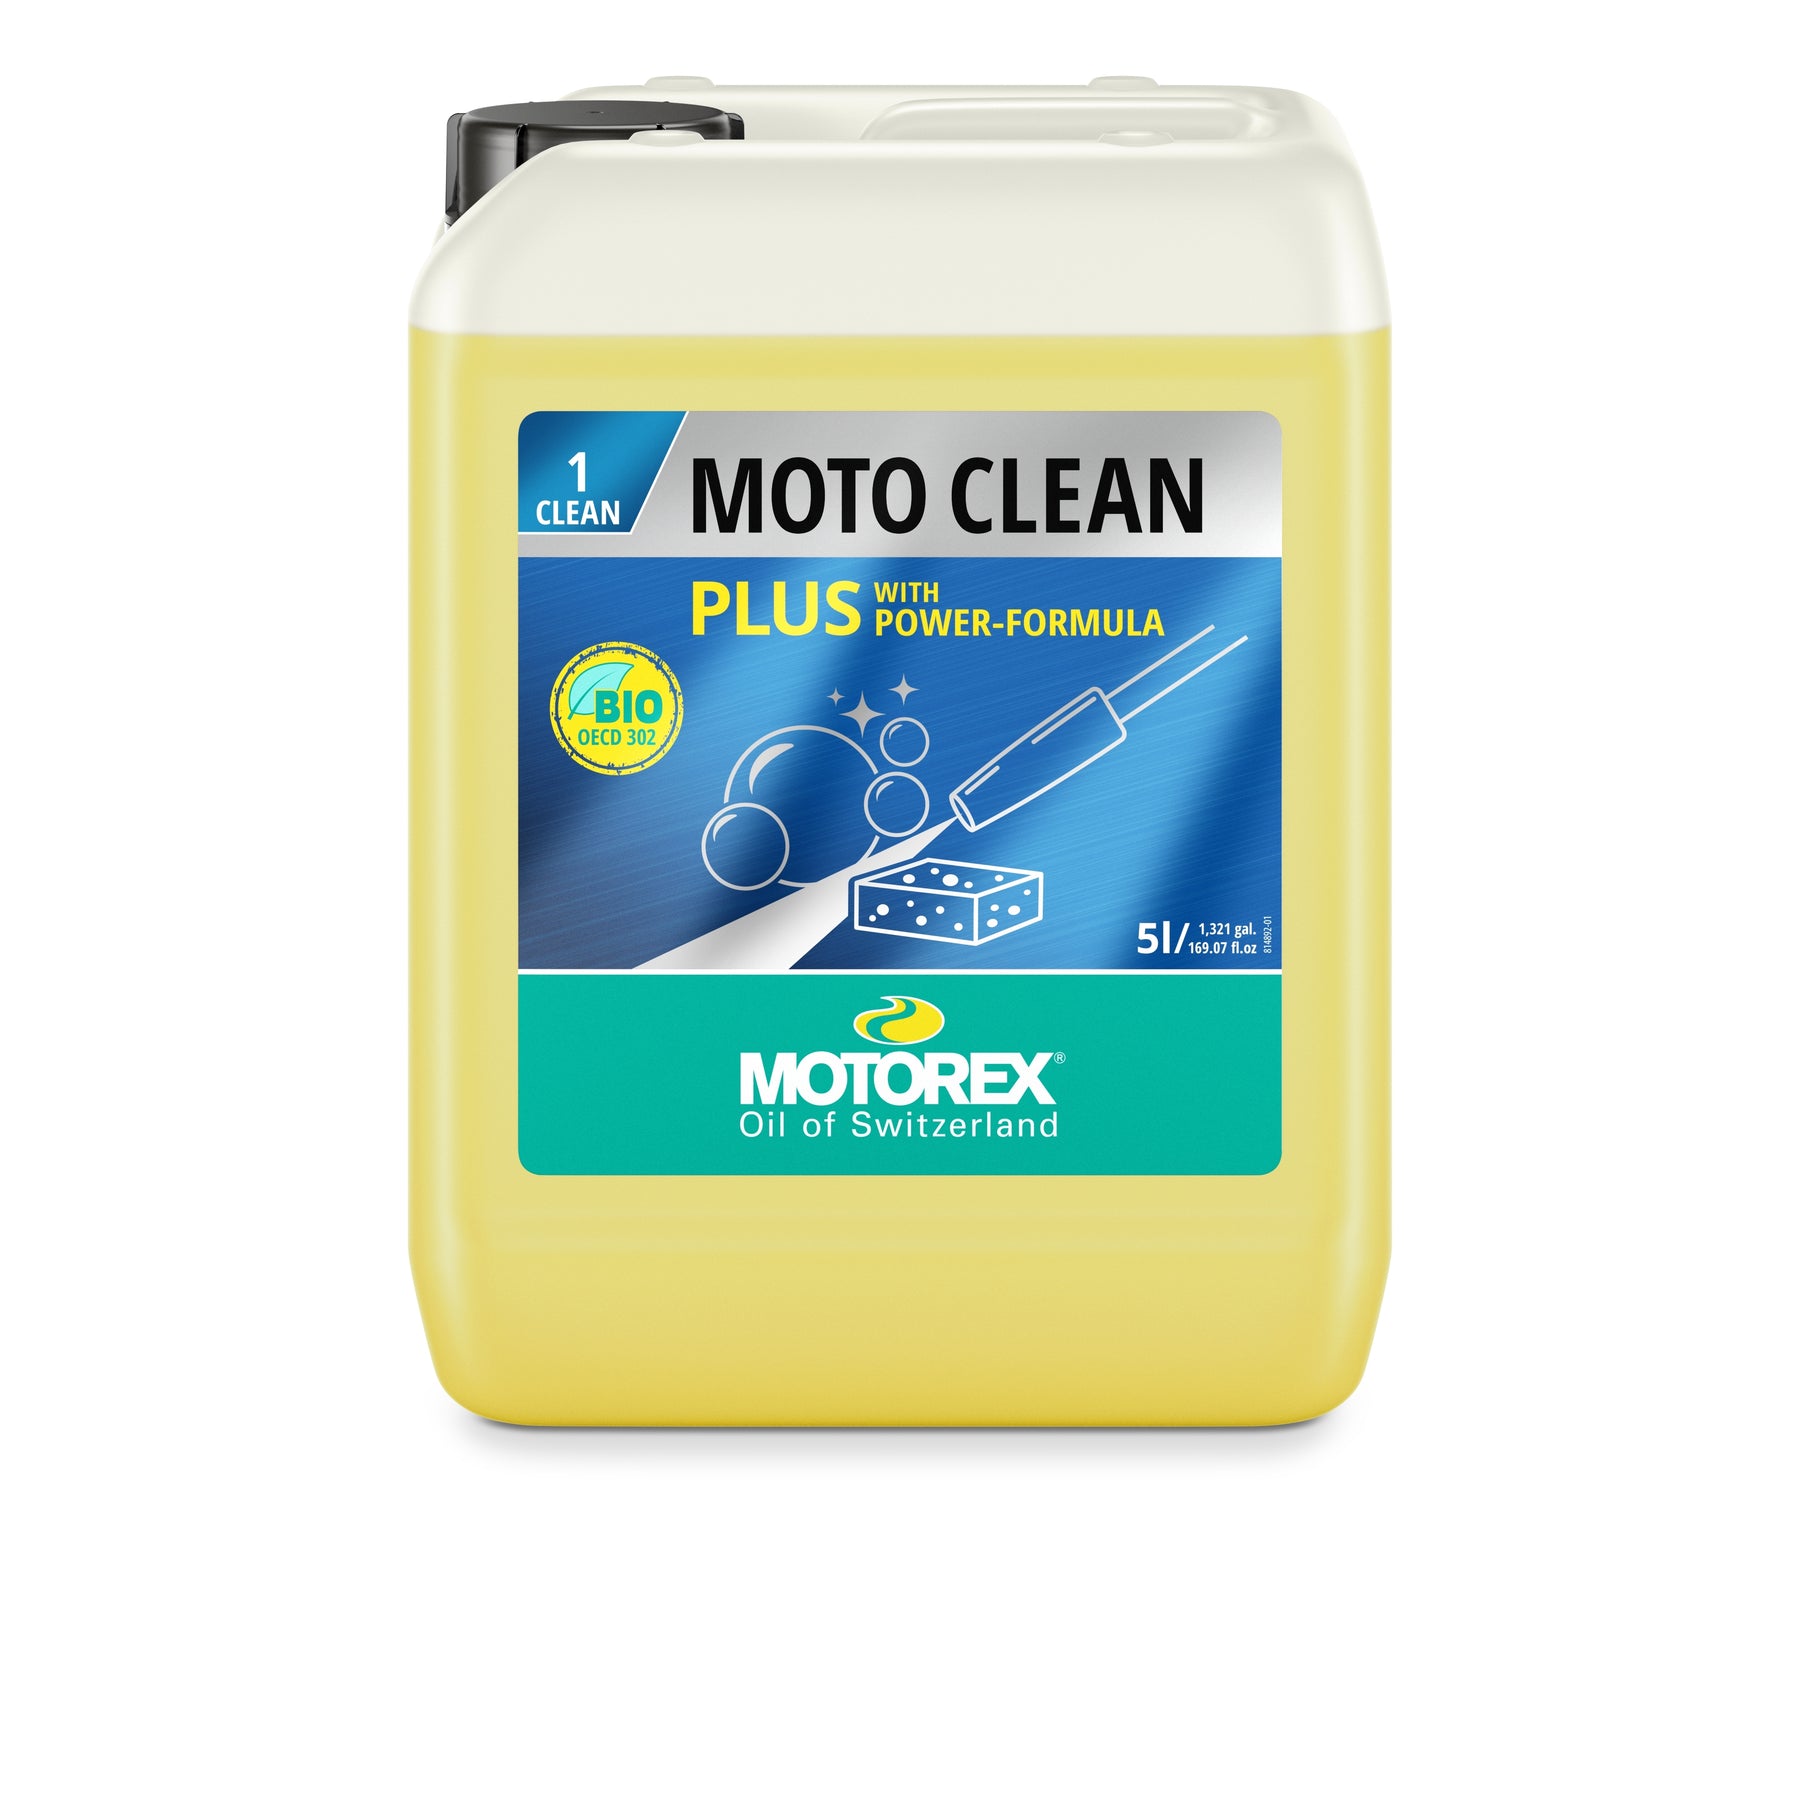 Kit de limpieza MOTOREX - Moto Cleaning Kit